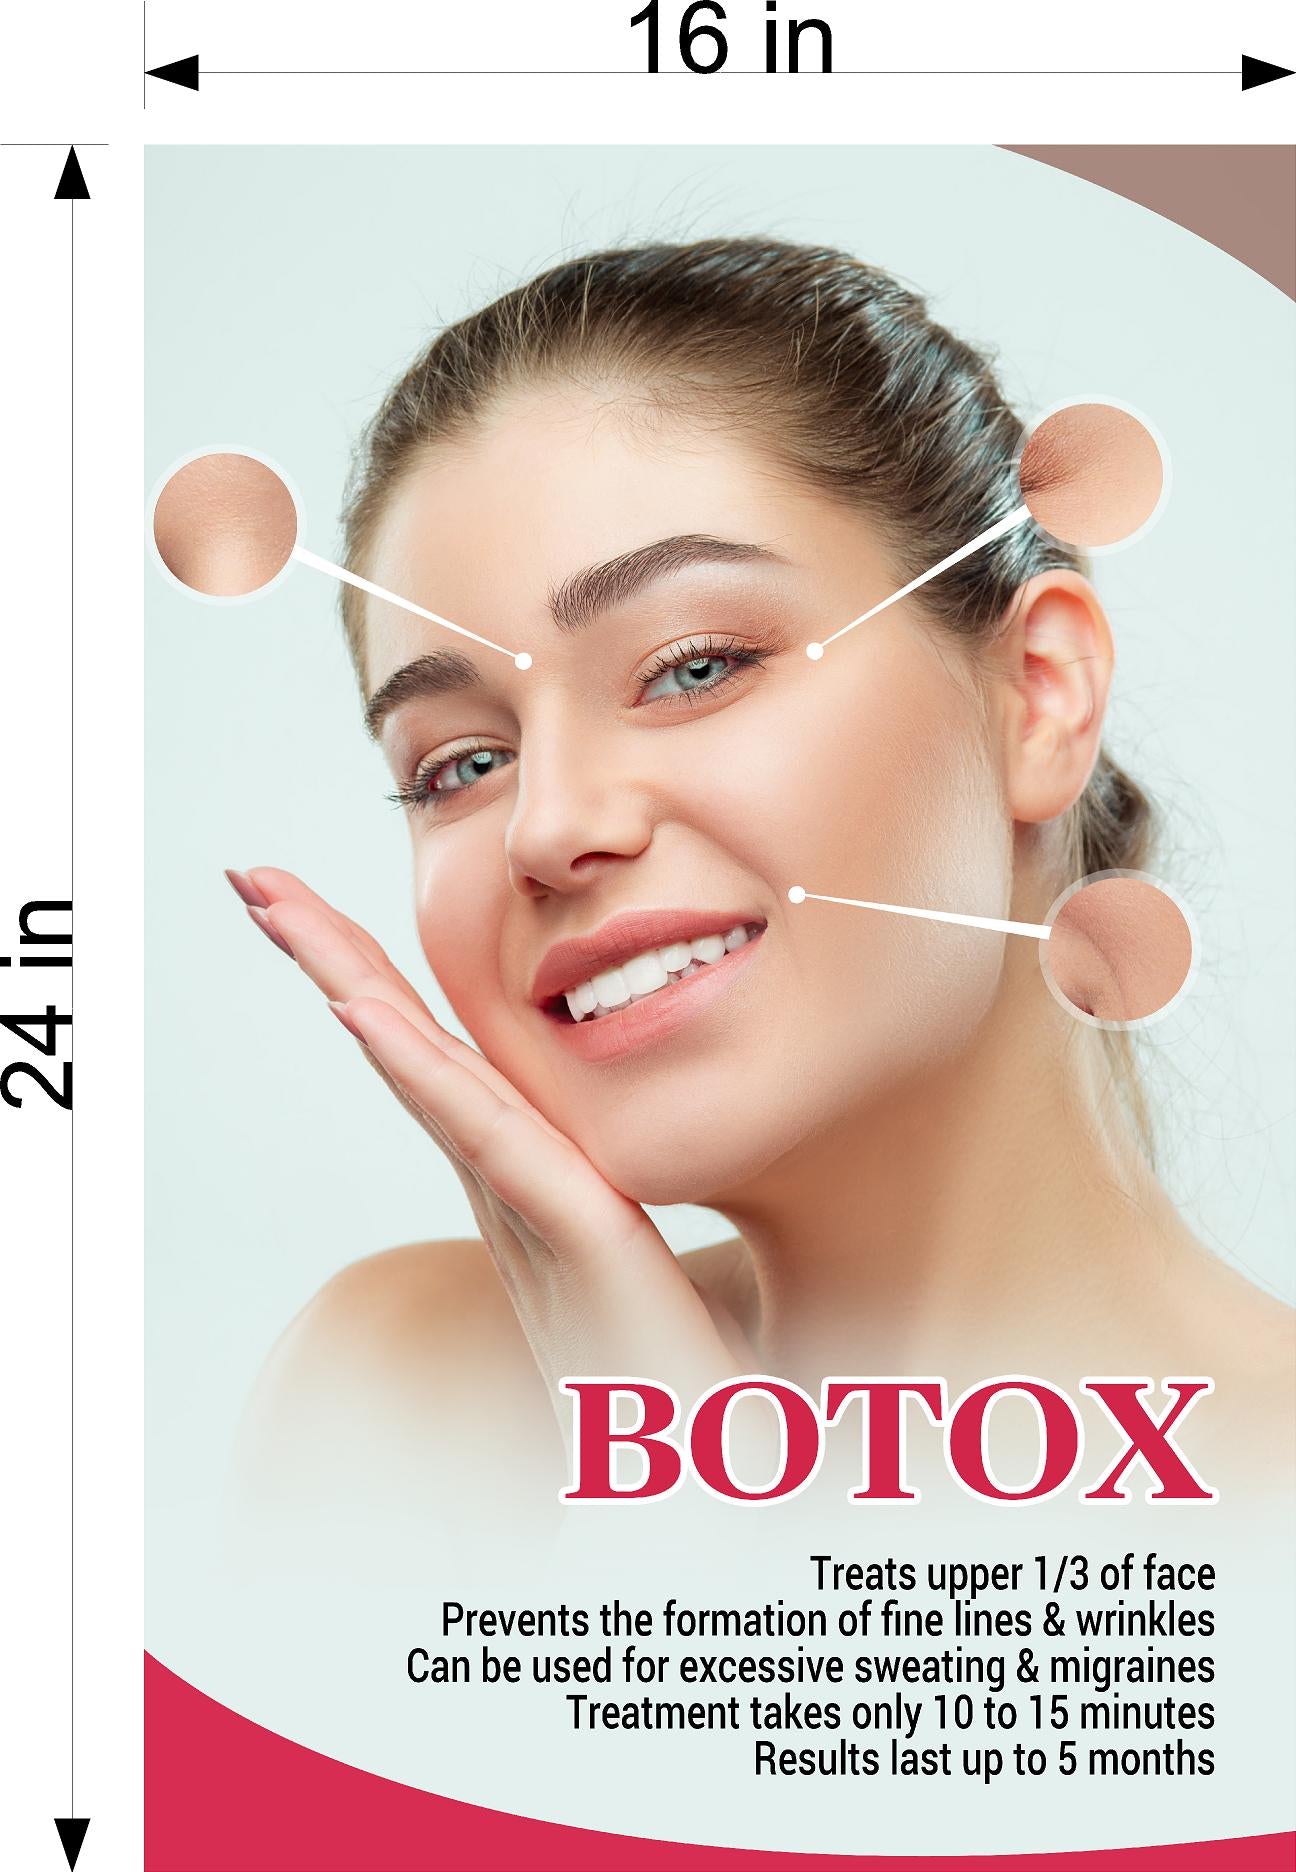 Botox Treatment in Mumbai, India | Facial Plastic Surgeon India